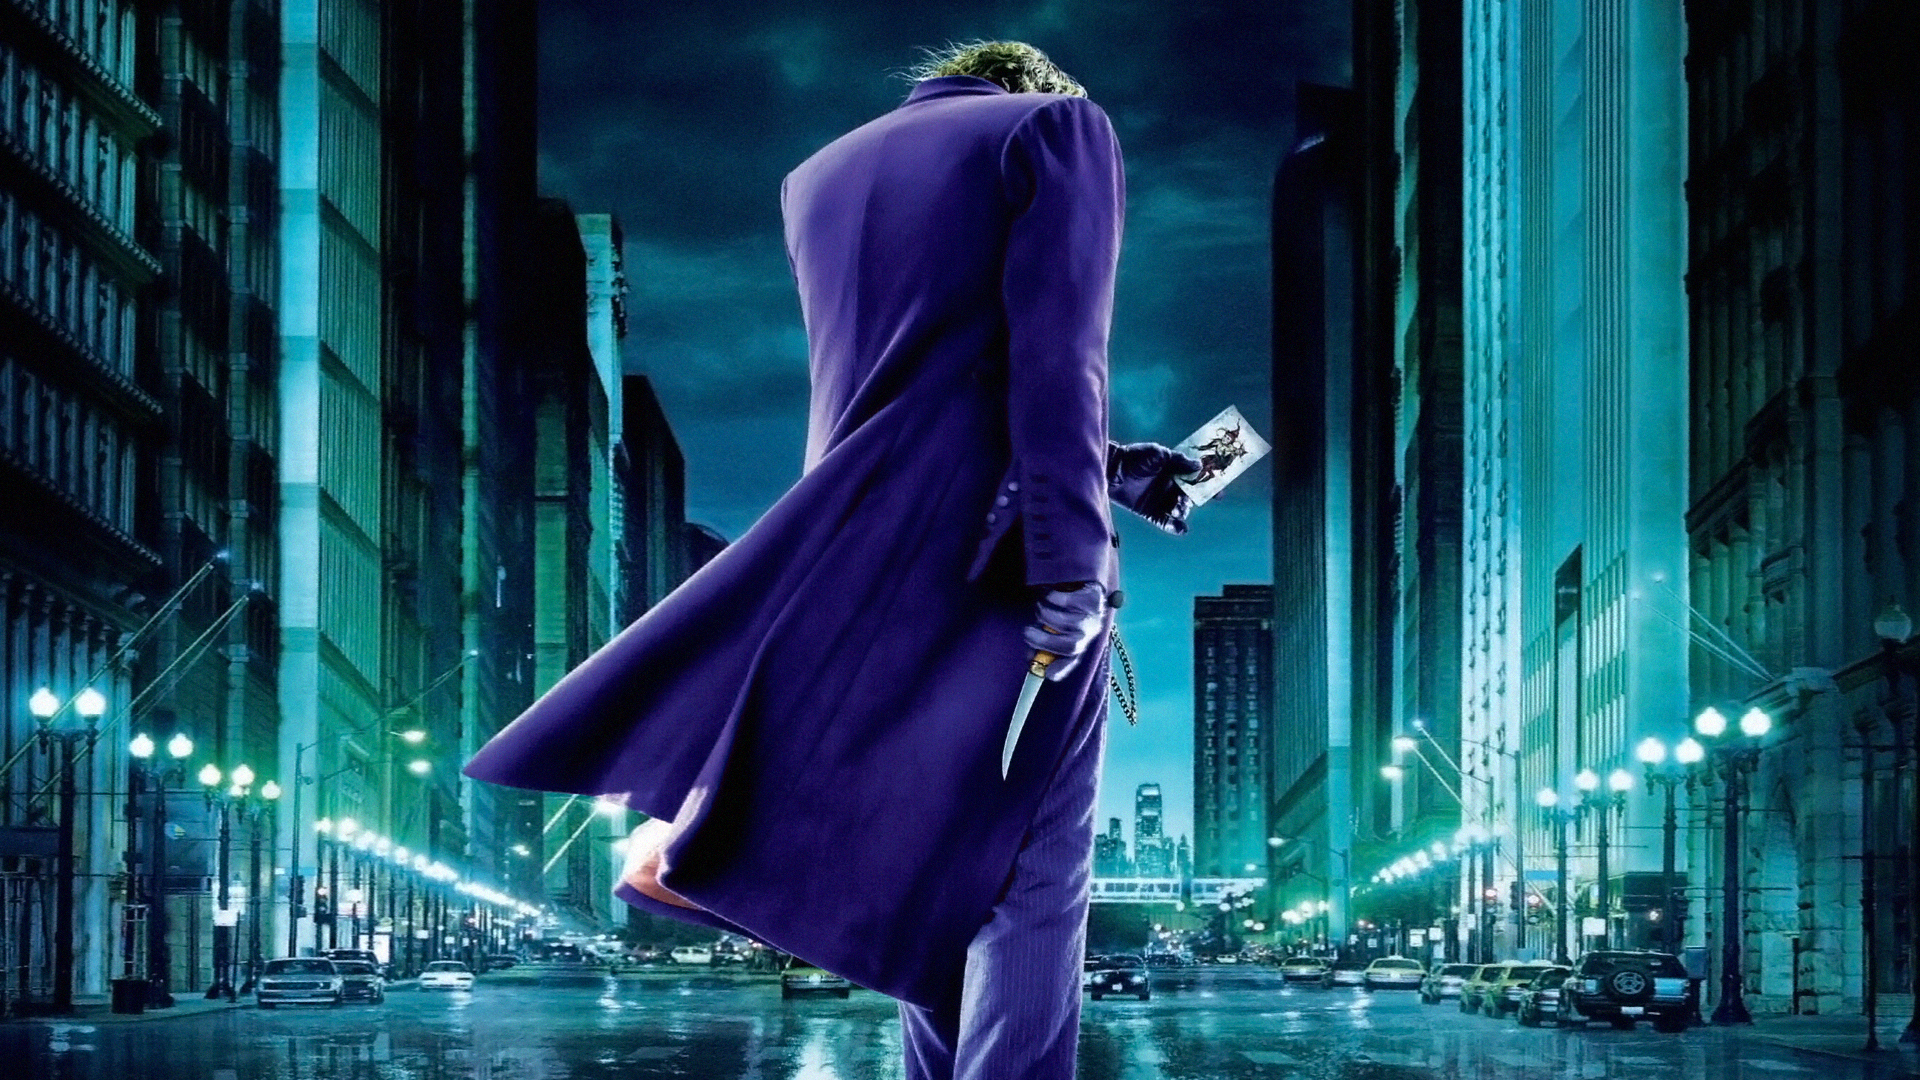  Dark  Knight  Joker  Card Full HD  Desktop  Wallpapers  1080p